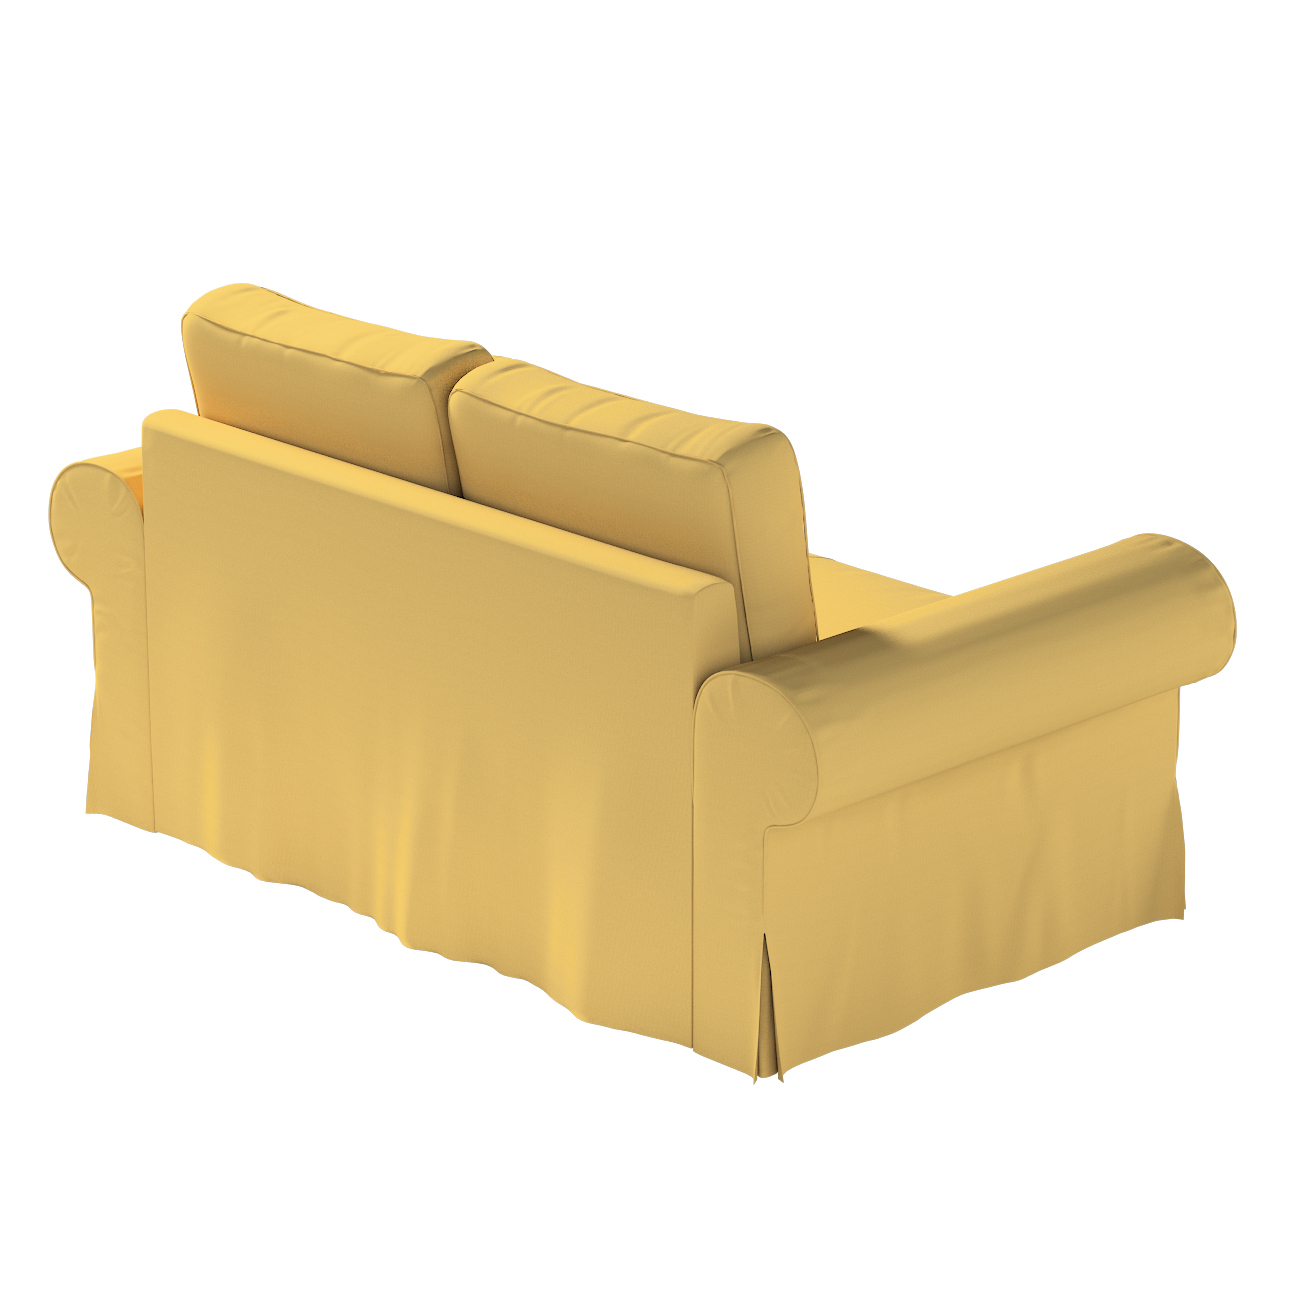 Bezug für Backabro 2-Sitzer Sofa ausklappbar, chiffongelb, Bezug für Backab günstig online kaufen